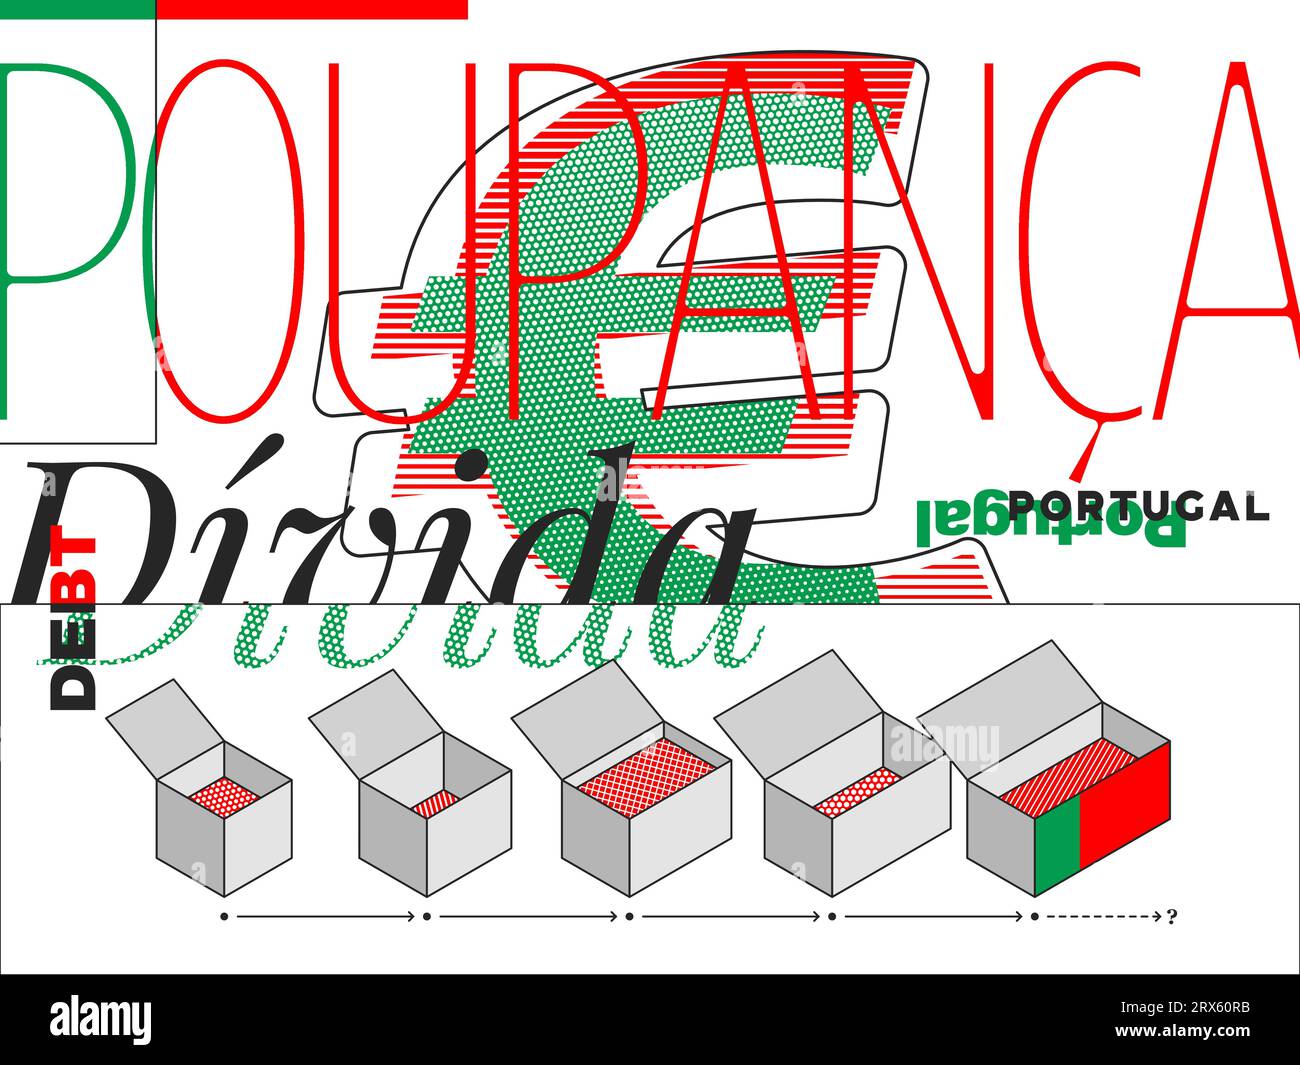 Illustrazione che cattura il debito nazionale del Portogallo, con simboli e motivi minimalisti. Illustrazione Vettoriale